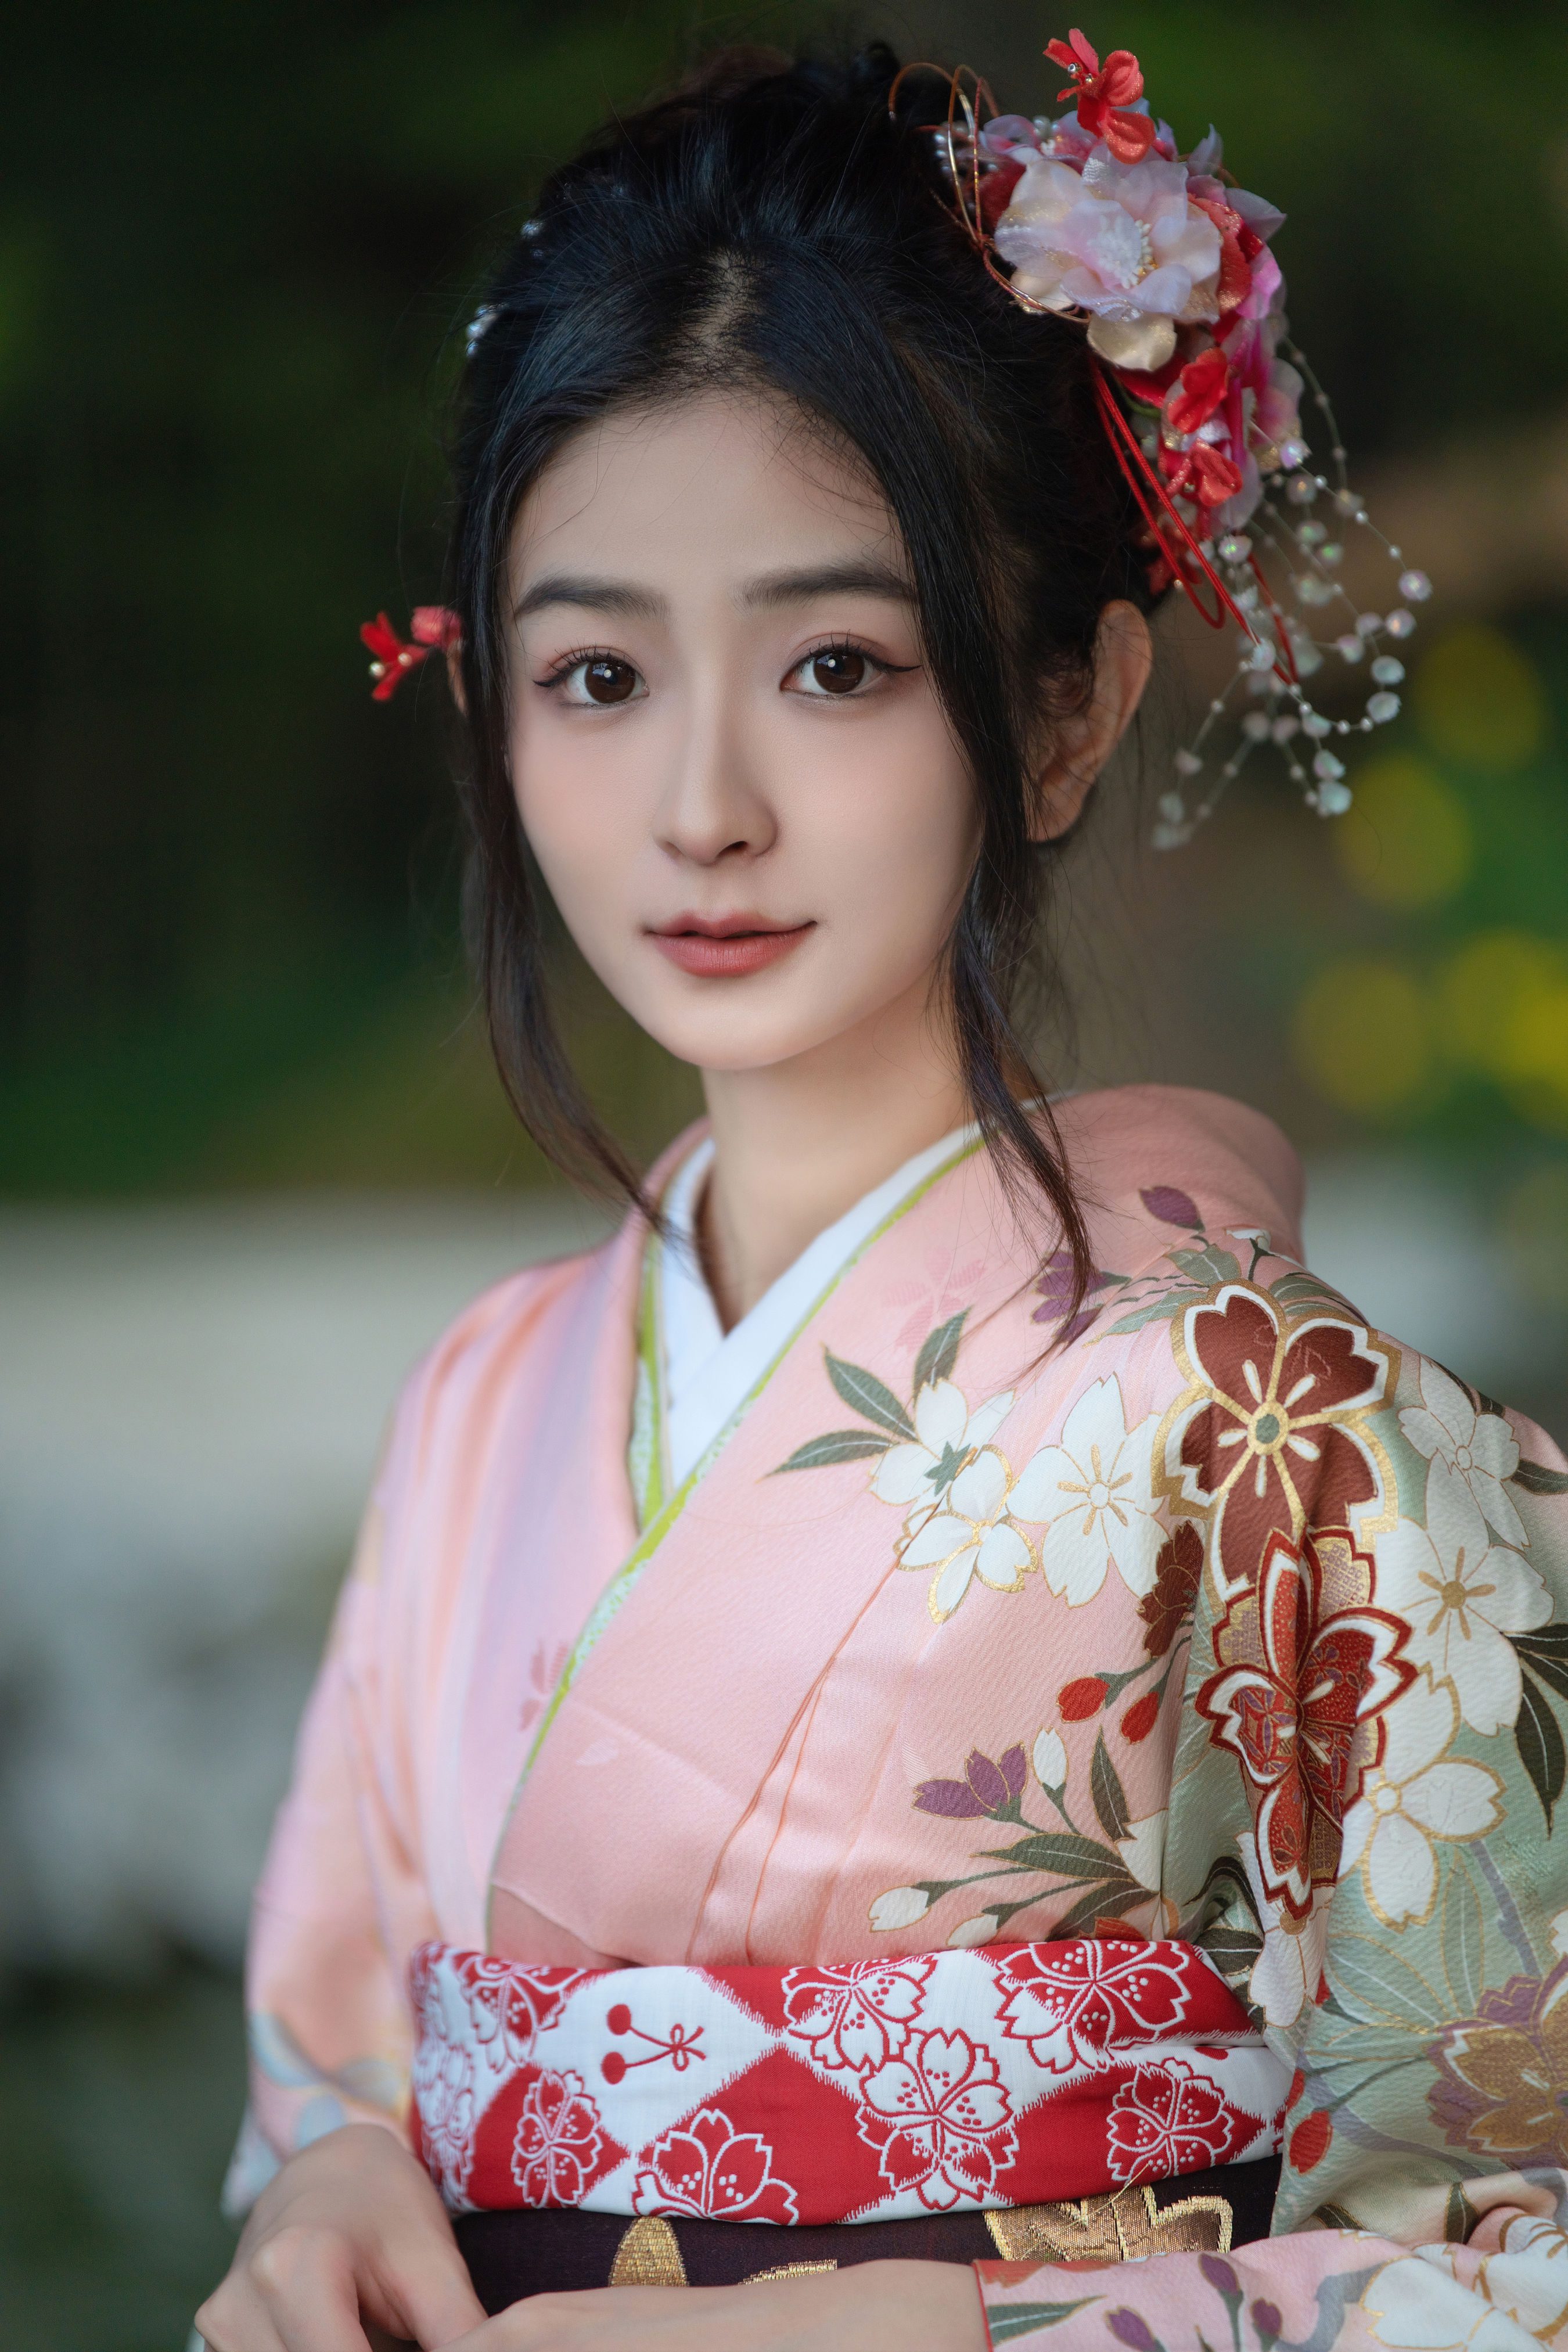 和服之女 精美 漂亮 优雅 养眼 日式和风 写真集 少女